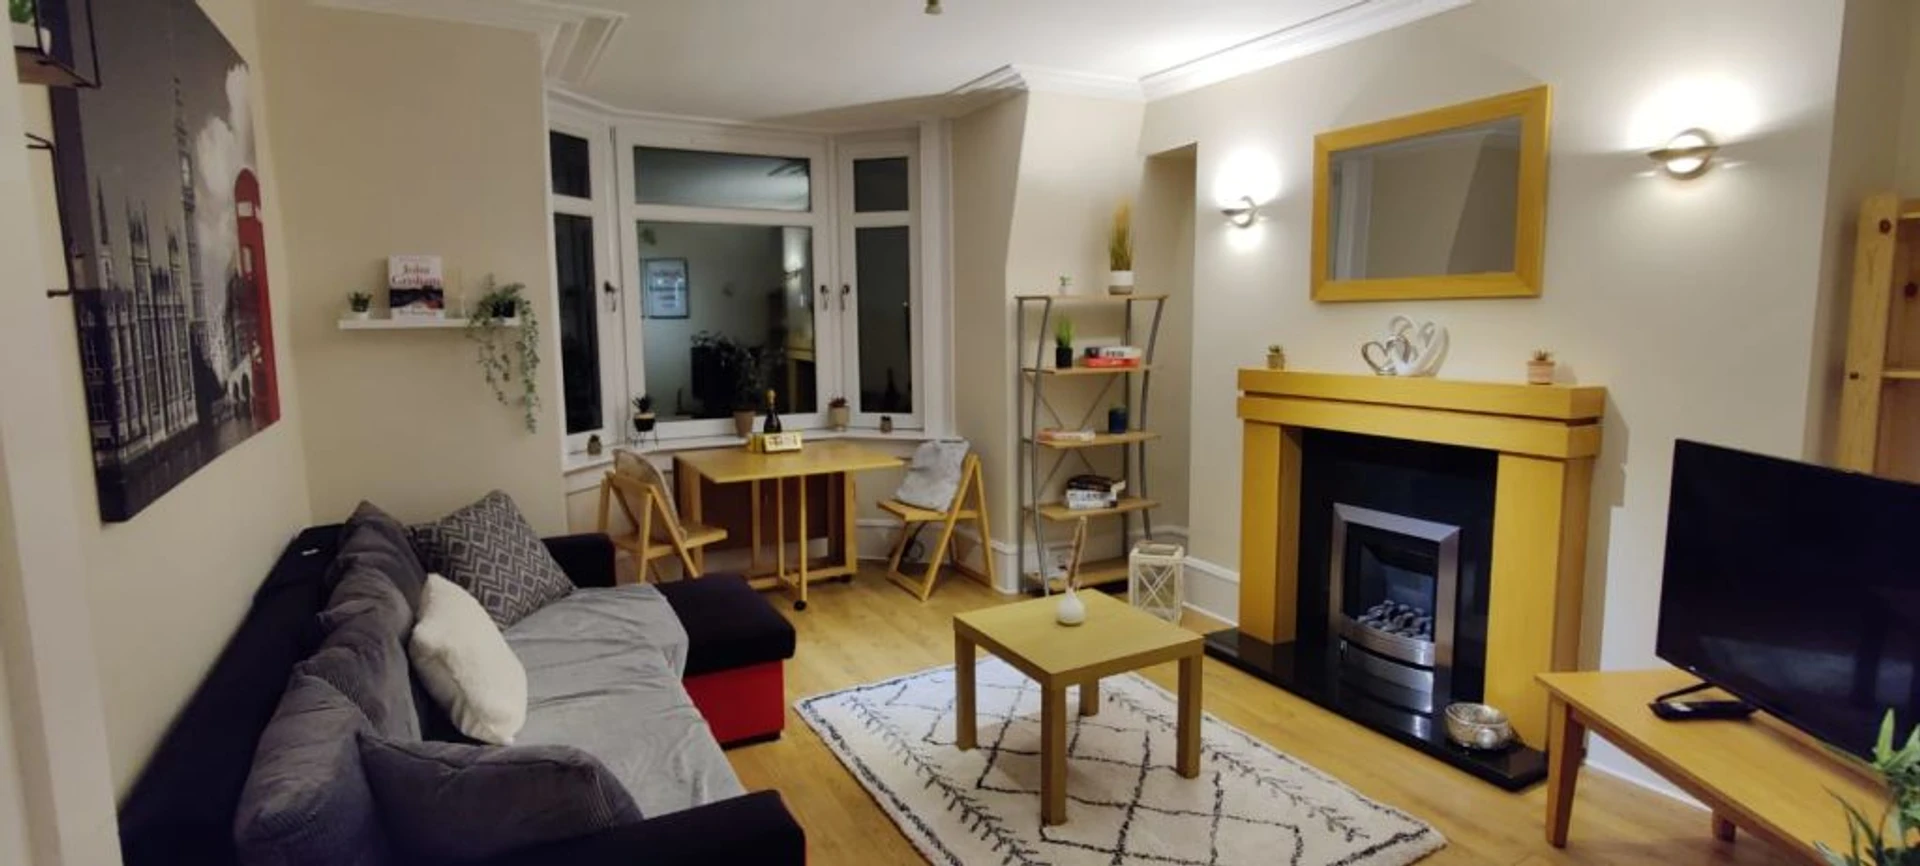 Apartamento moderno e brilhante em Aberdeen